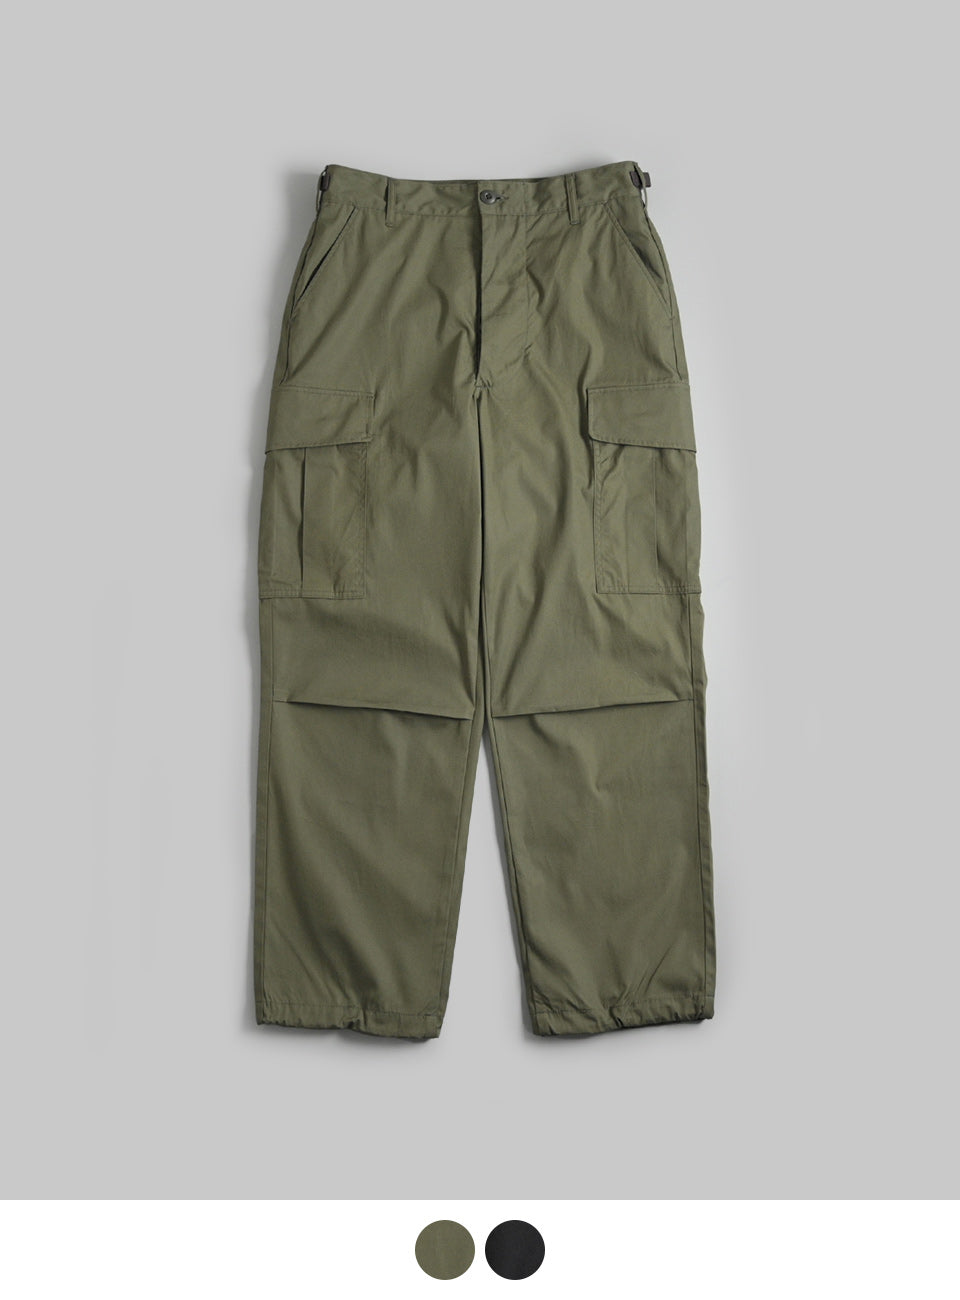 CIOTA シオタ Jungle Fatigue Pants ジャングル ファティーグ パンツ PTLM-136【送料無料】正規取扱店